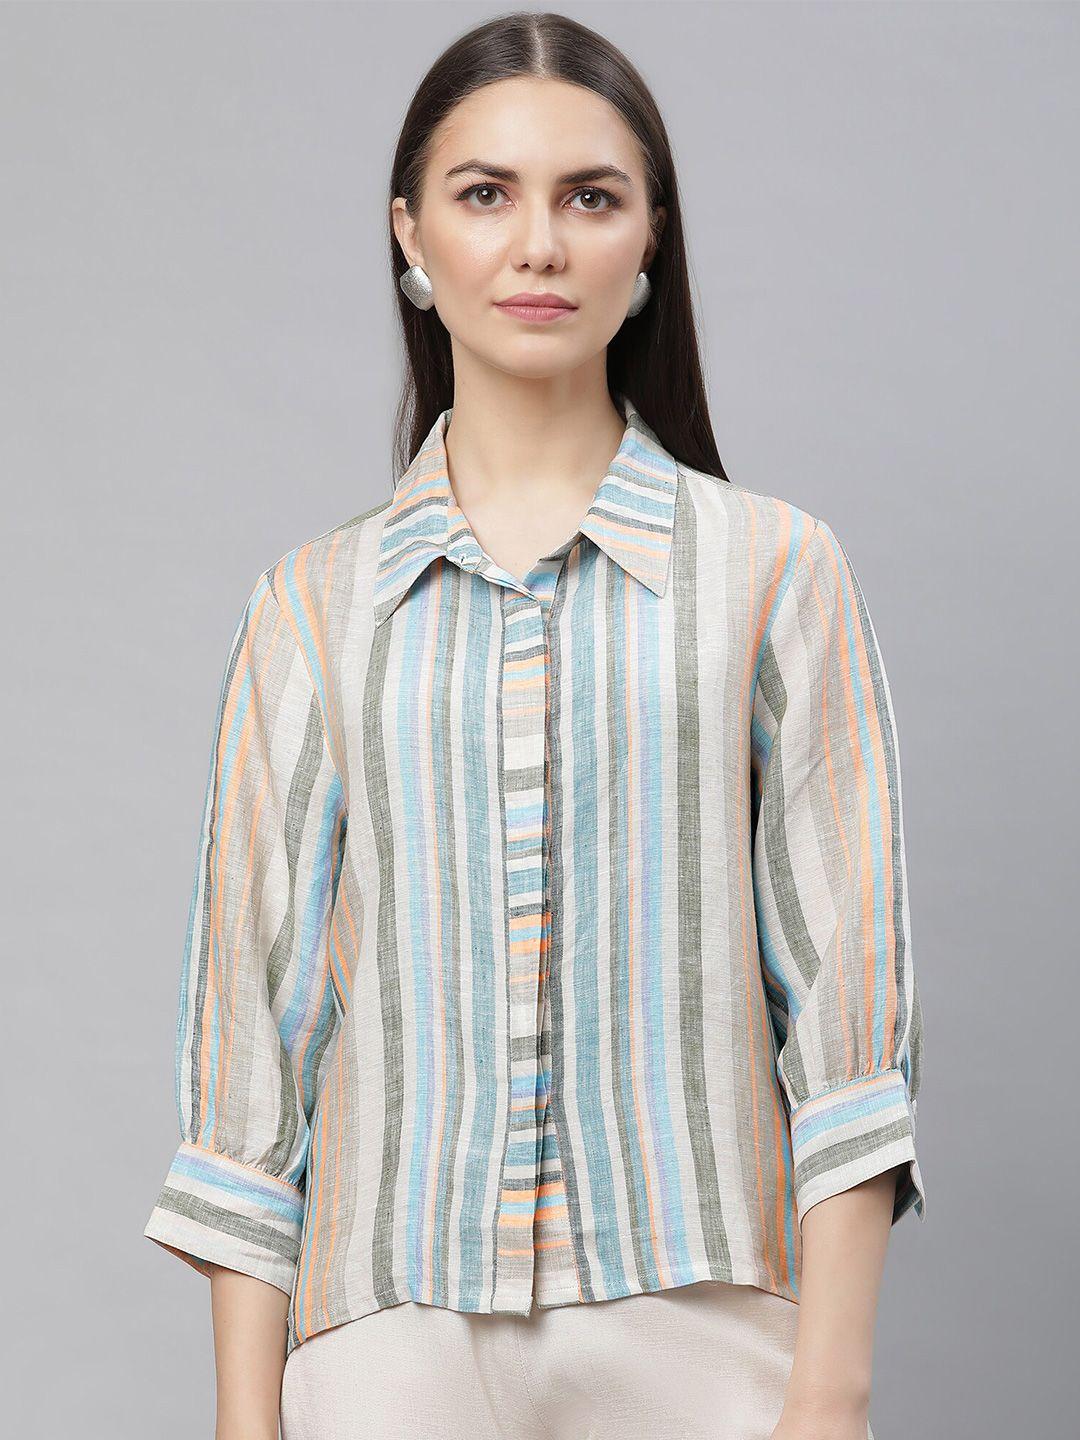 linen club woman vertical striped linen shirt style top